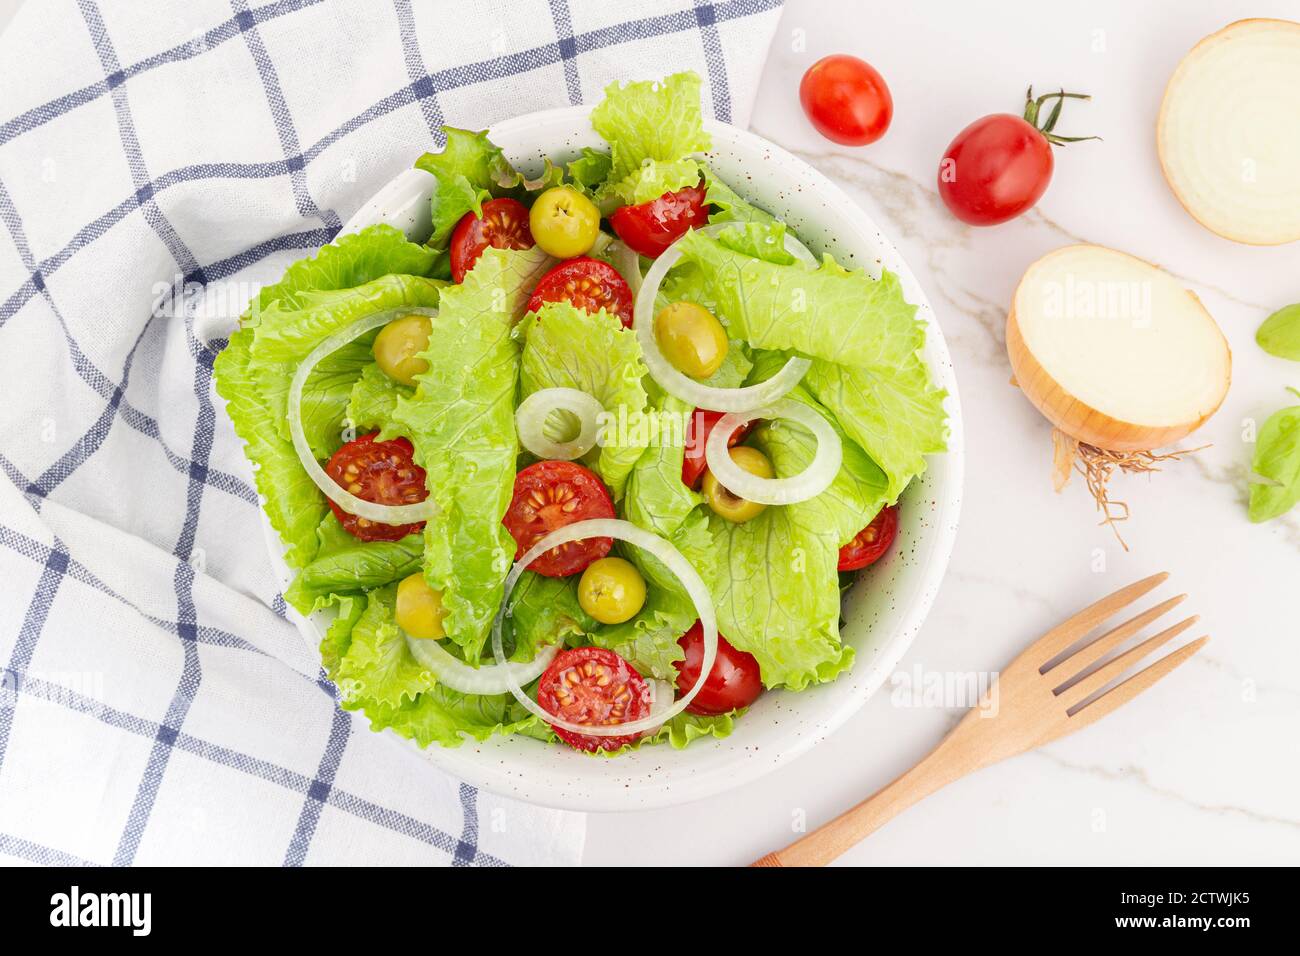 Insalata fresca e sana con lattuga, cipolla, pomodori ciliegini e olive in una ciotola. Cucina mediterranea Foto Stock